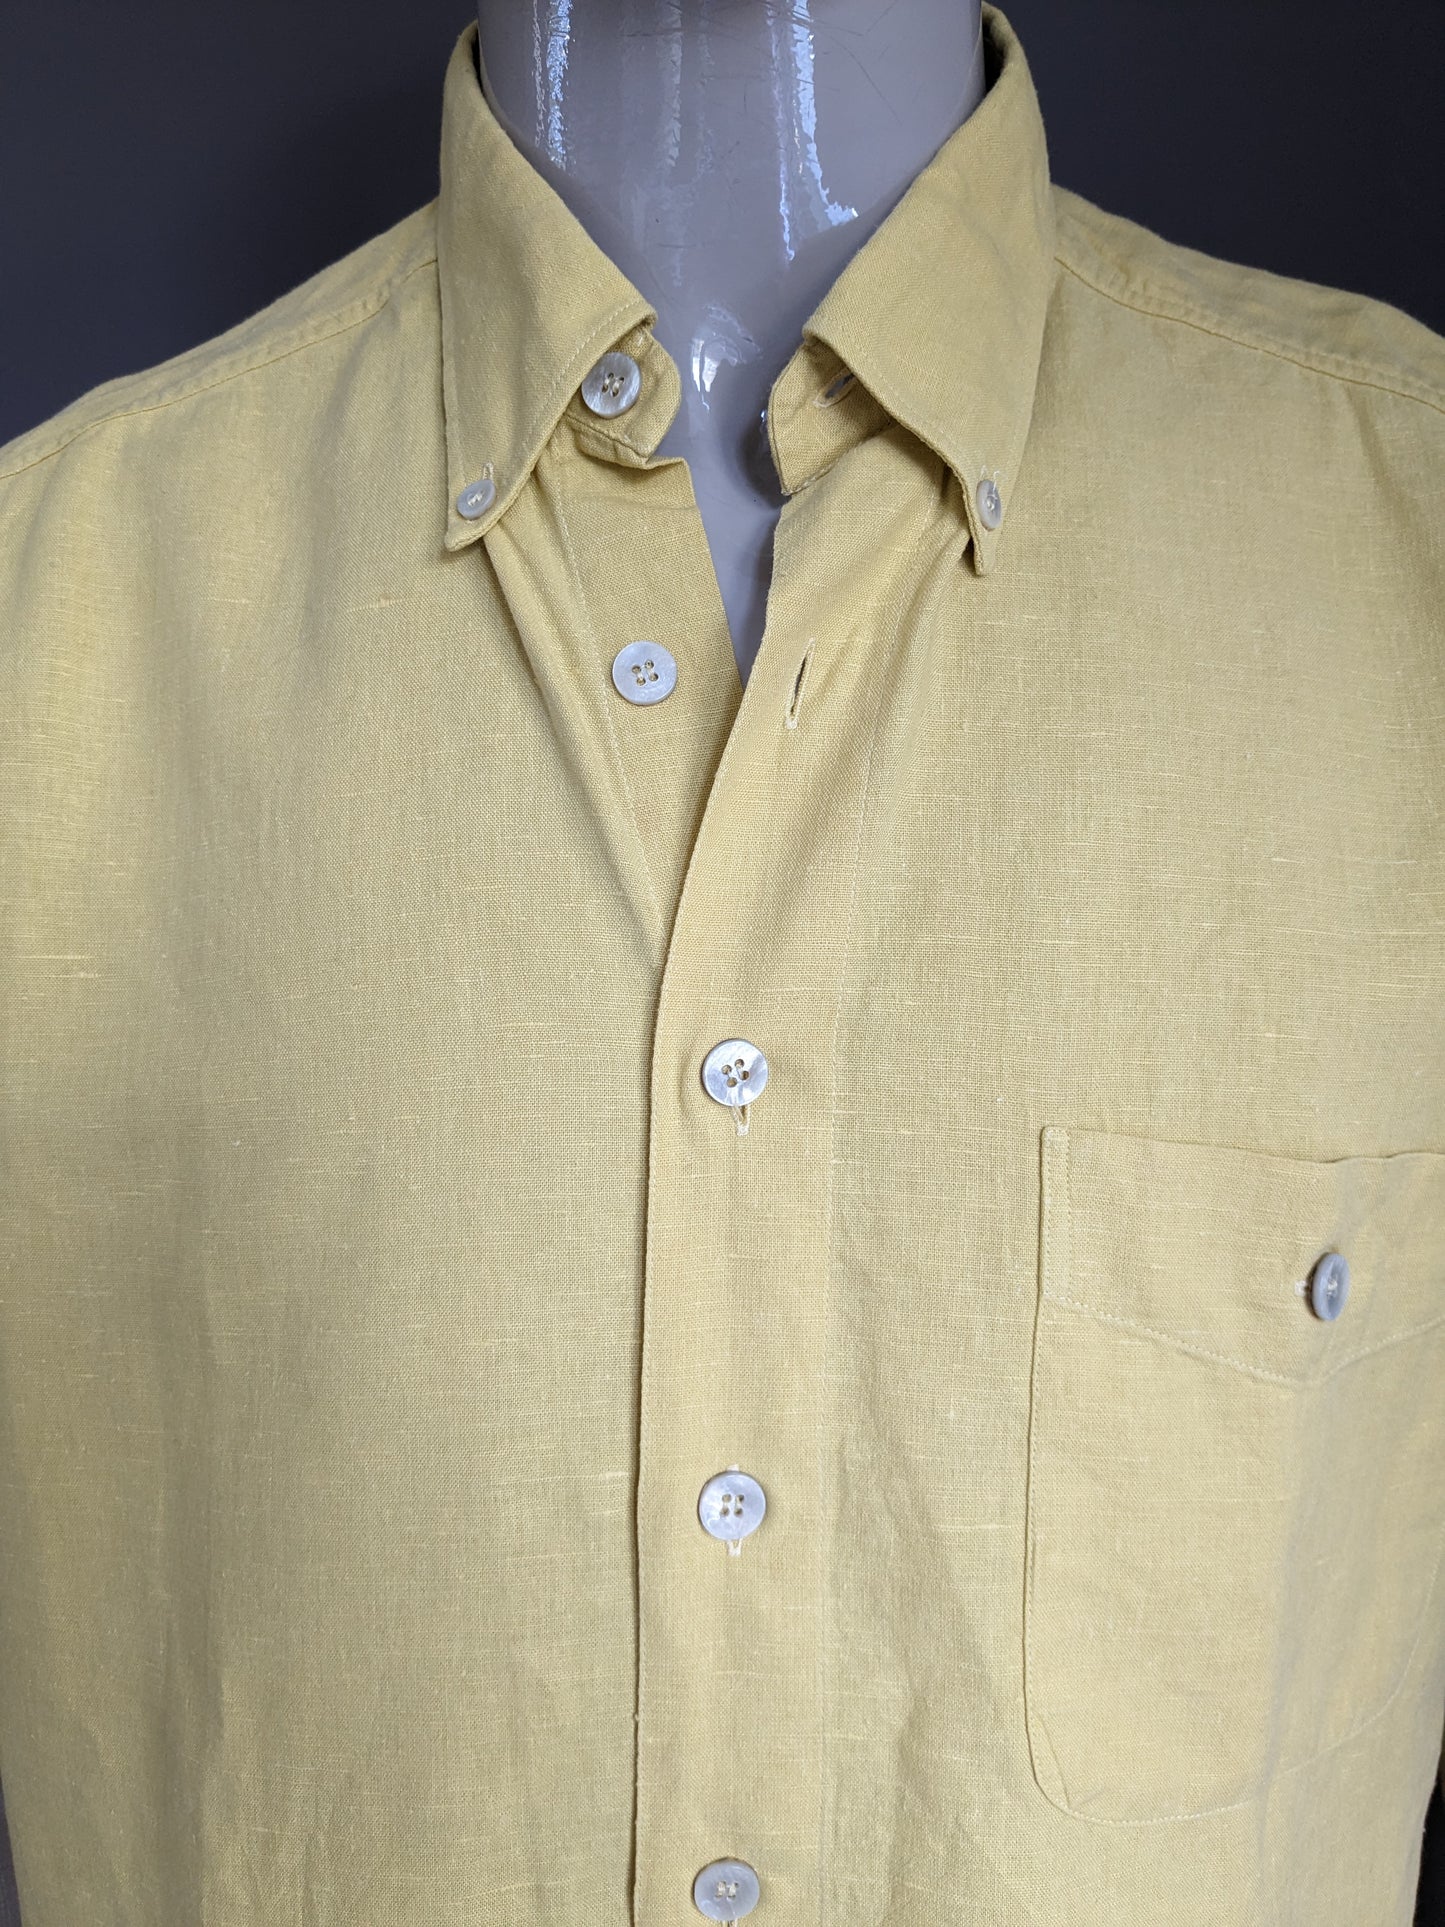 Chemise en lin Pohland vintage exklusiv avec boutons plus grands. Couleur jaune. Taille 2xl / xxl.